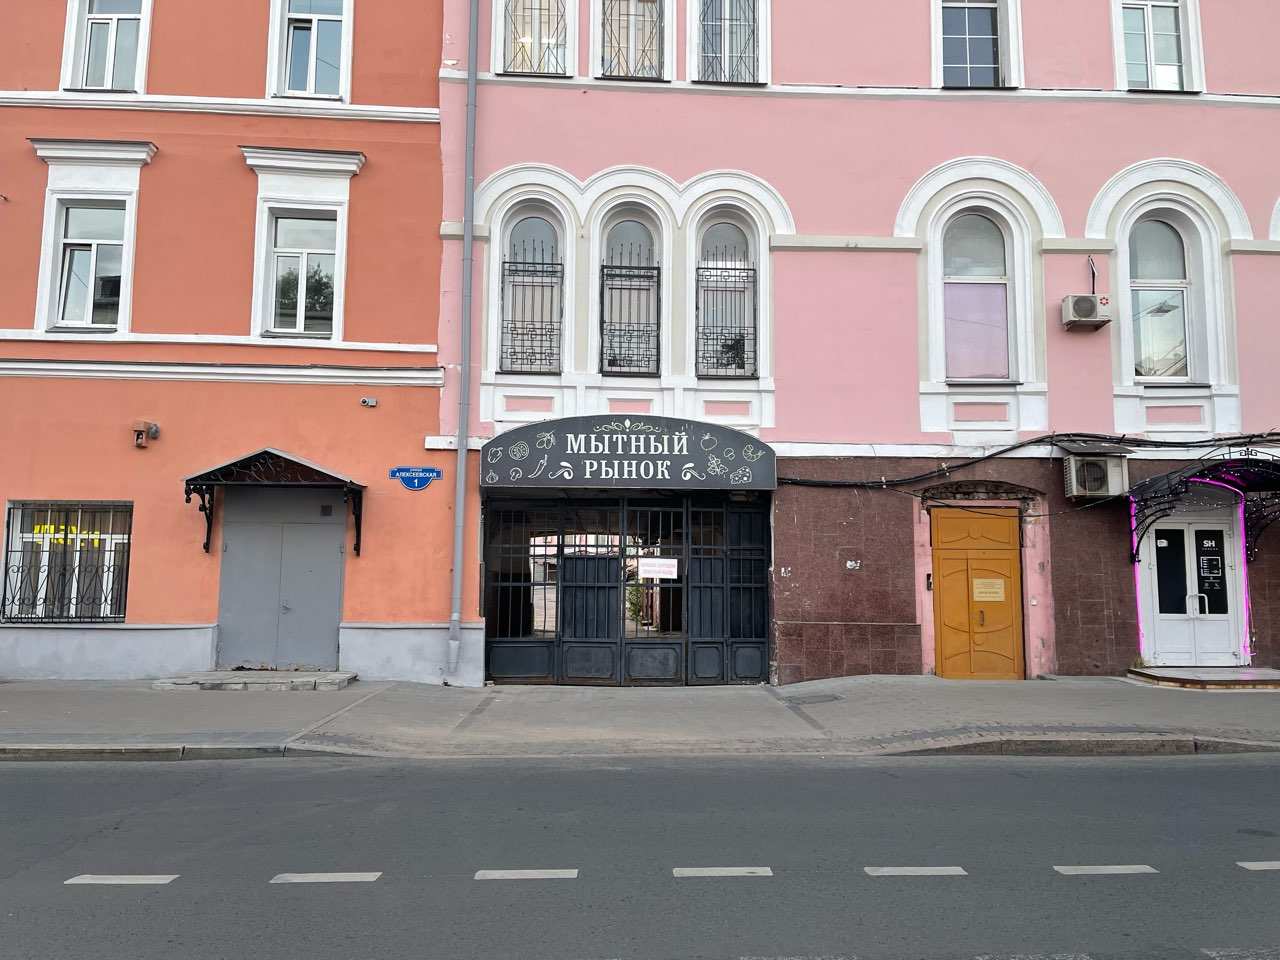 Гостиницу могут построить месте Мытного рынка в Нижнем Новгороде